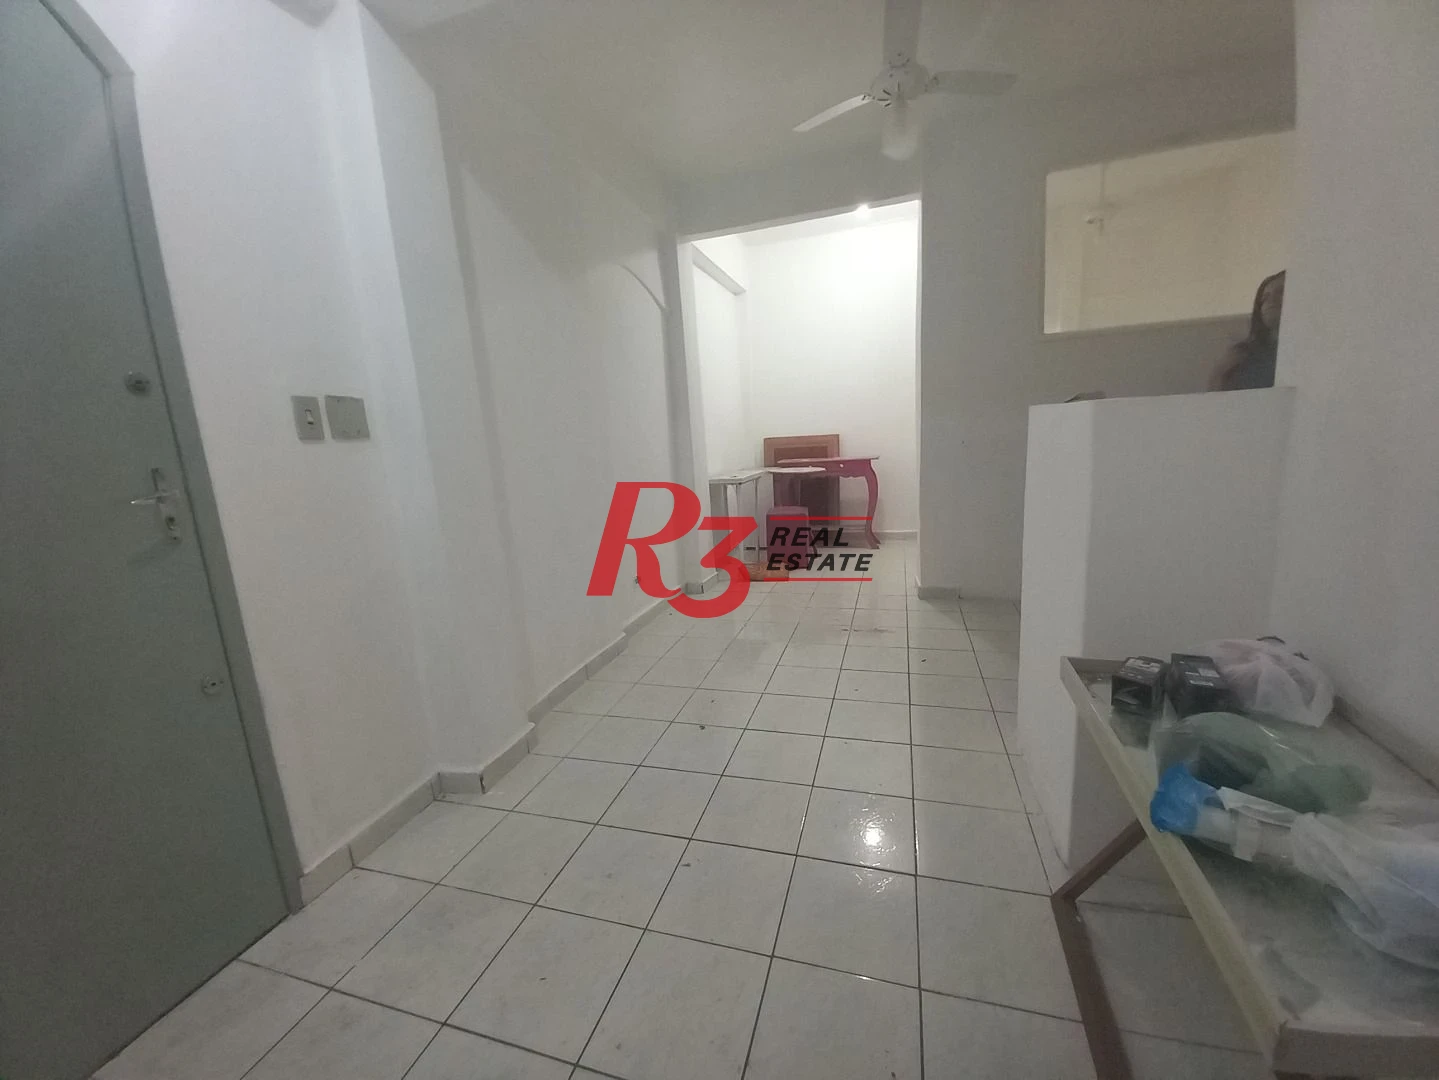 Kitnet com 1 dormitório à venda, 22 m² por R$ 230.000,00 - Centro - São Vicente/SP